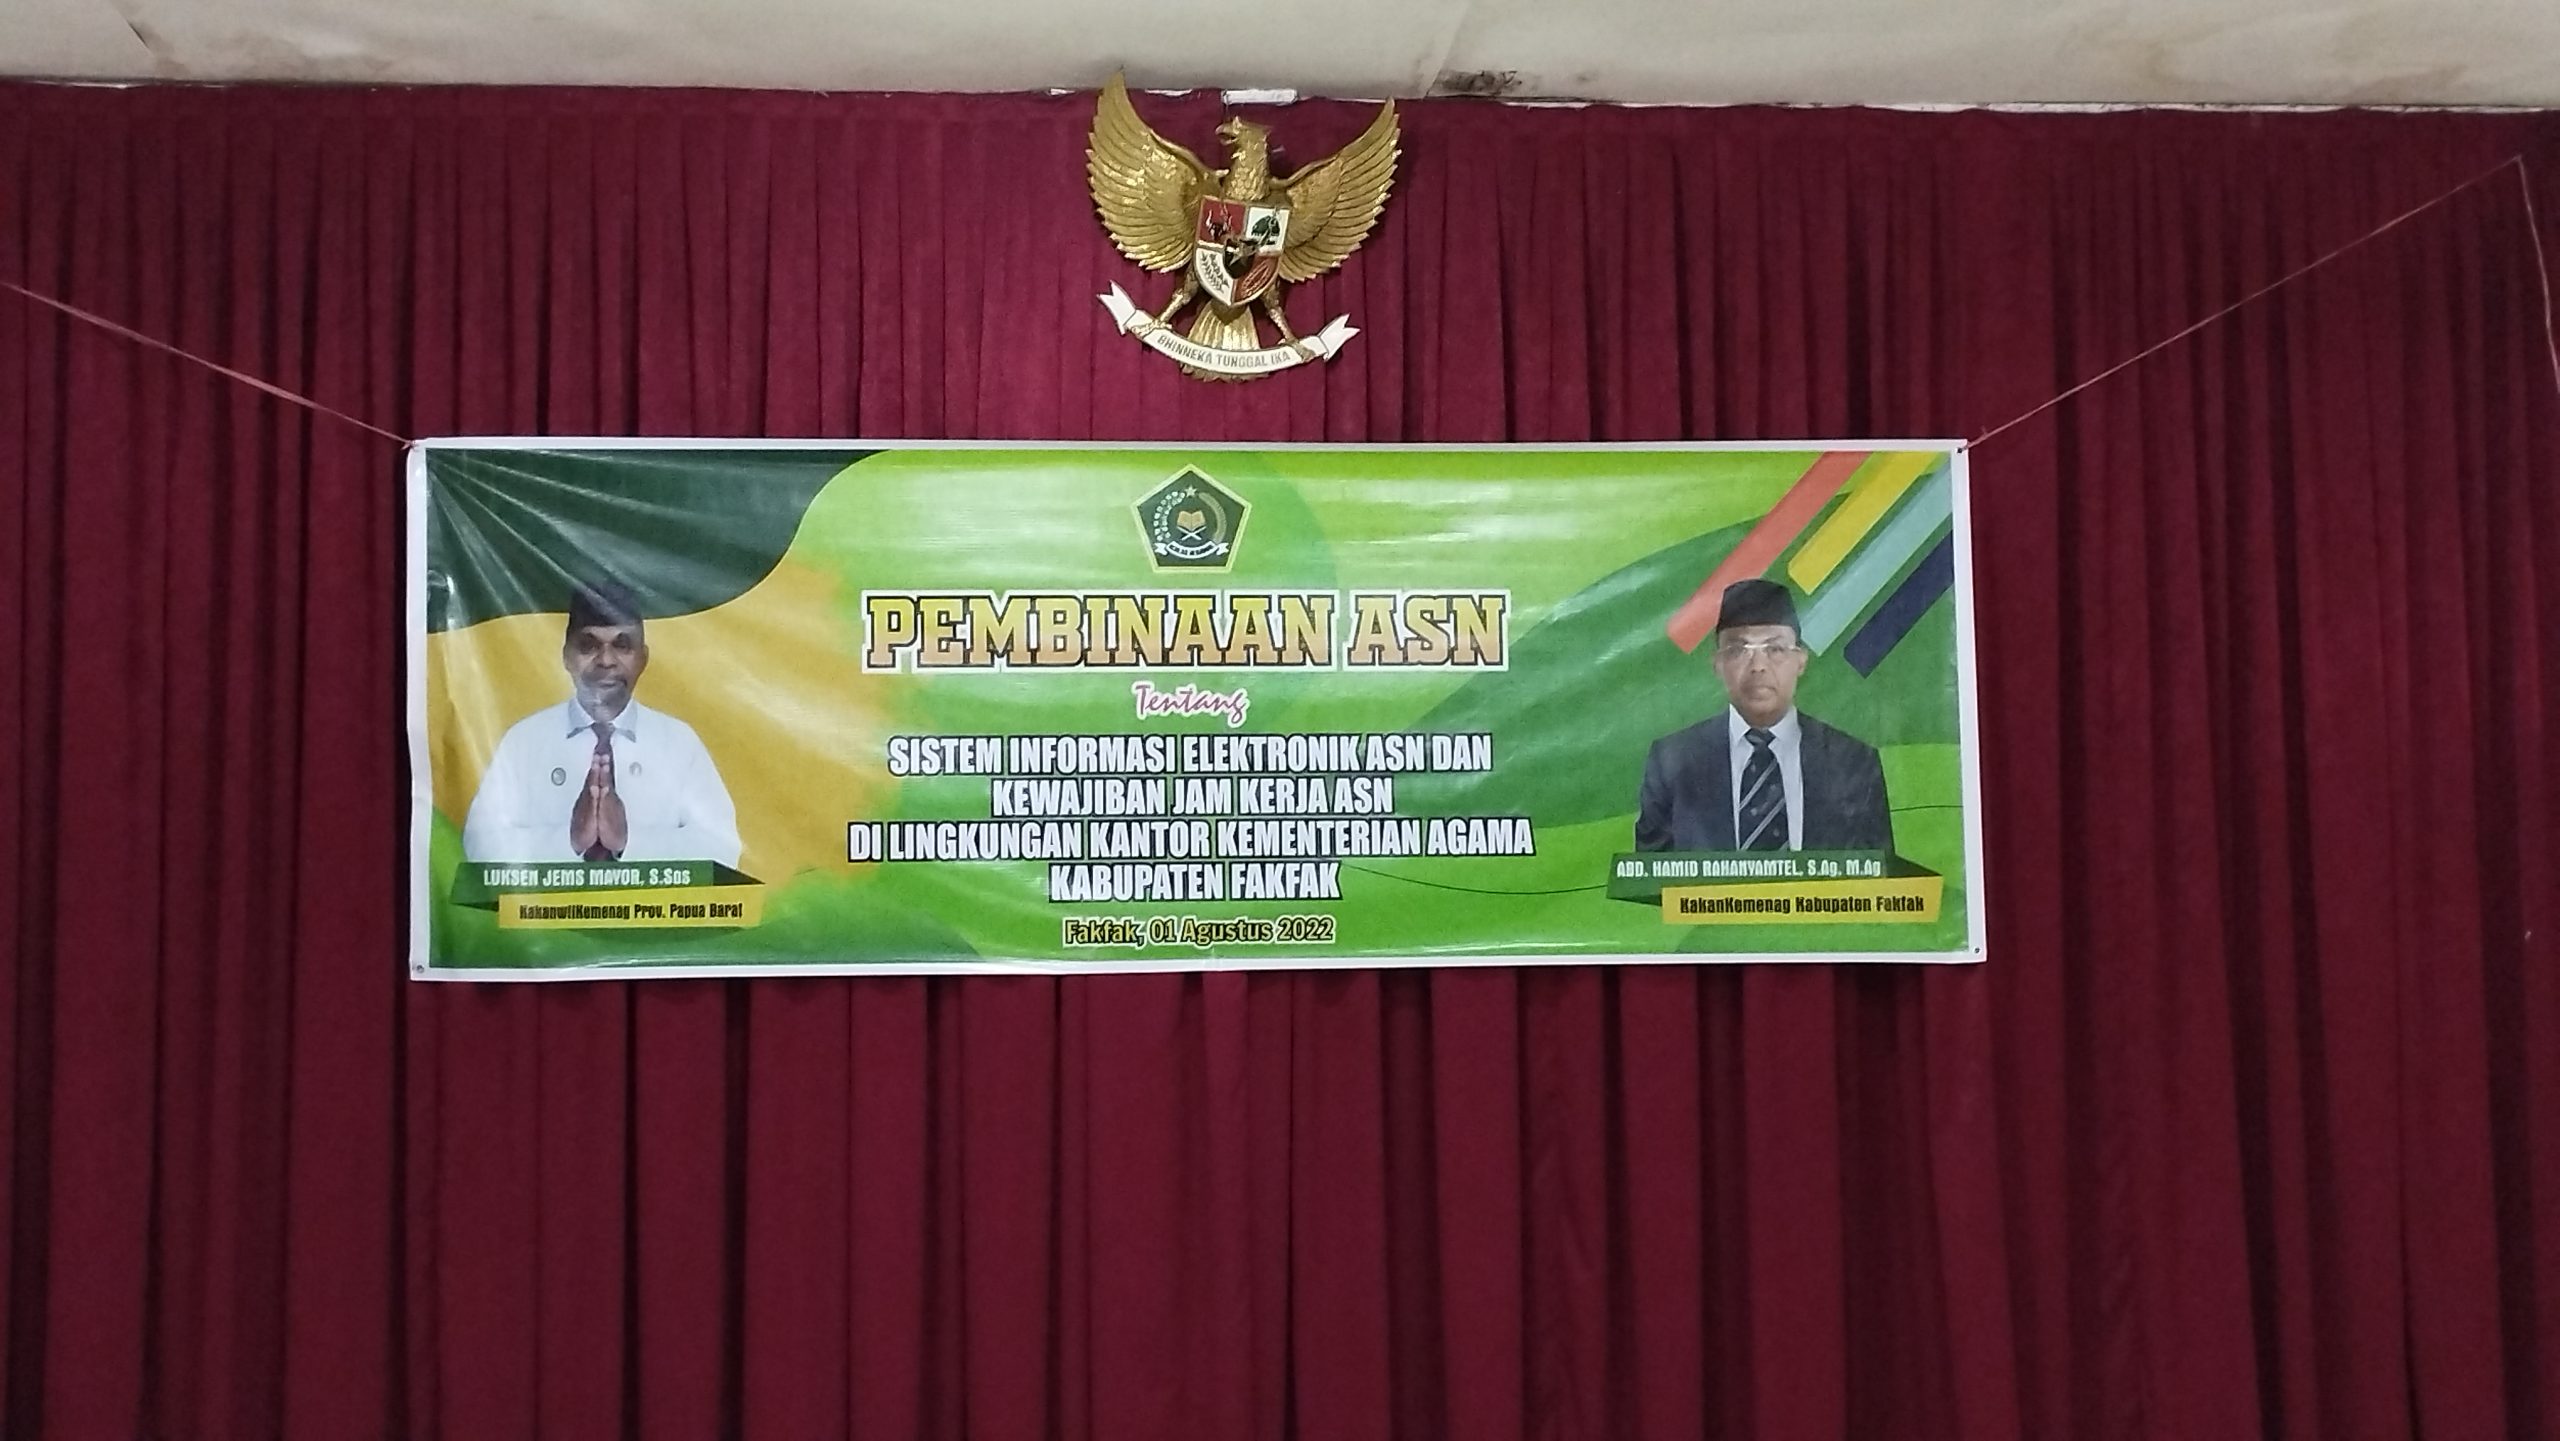 Read more about the article Pembinaan ASN Di Lingkungan Kantor Kemenag Kab. Fakfak